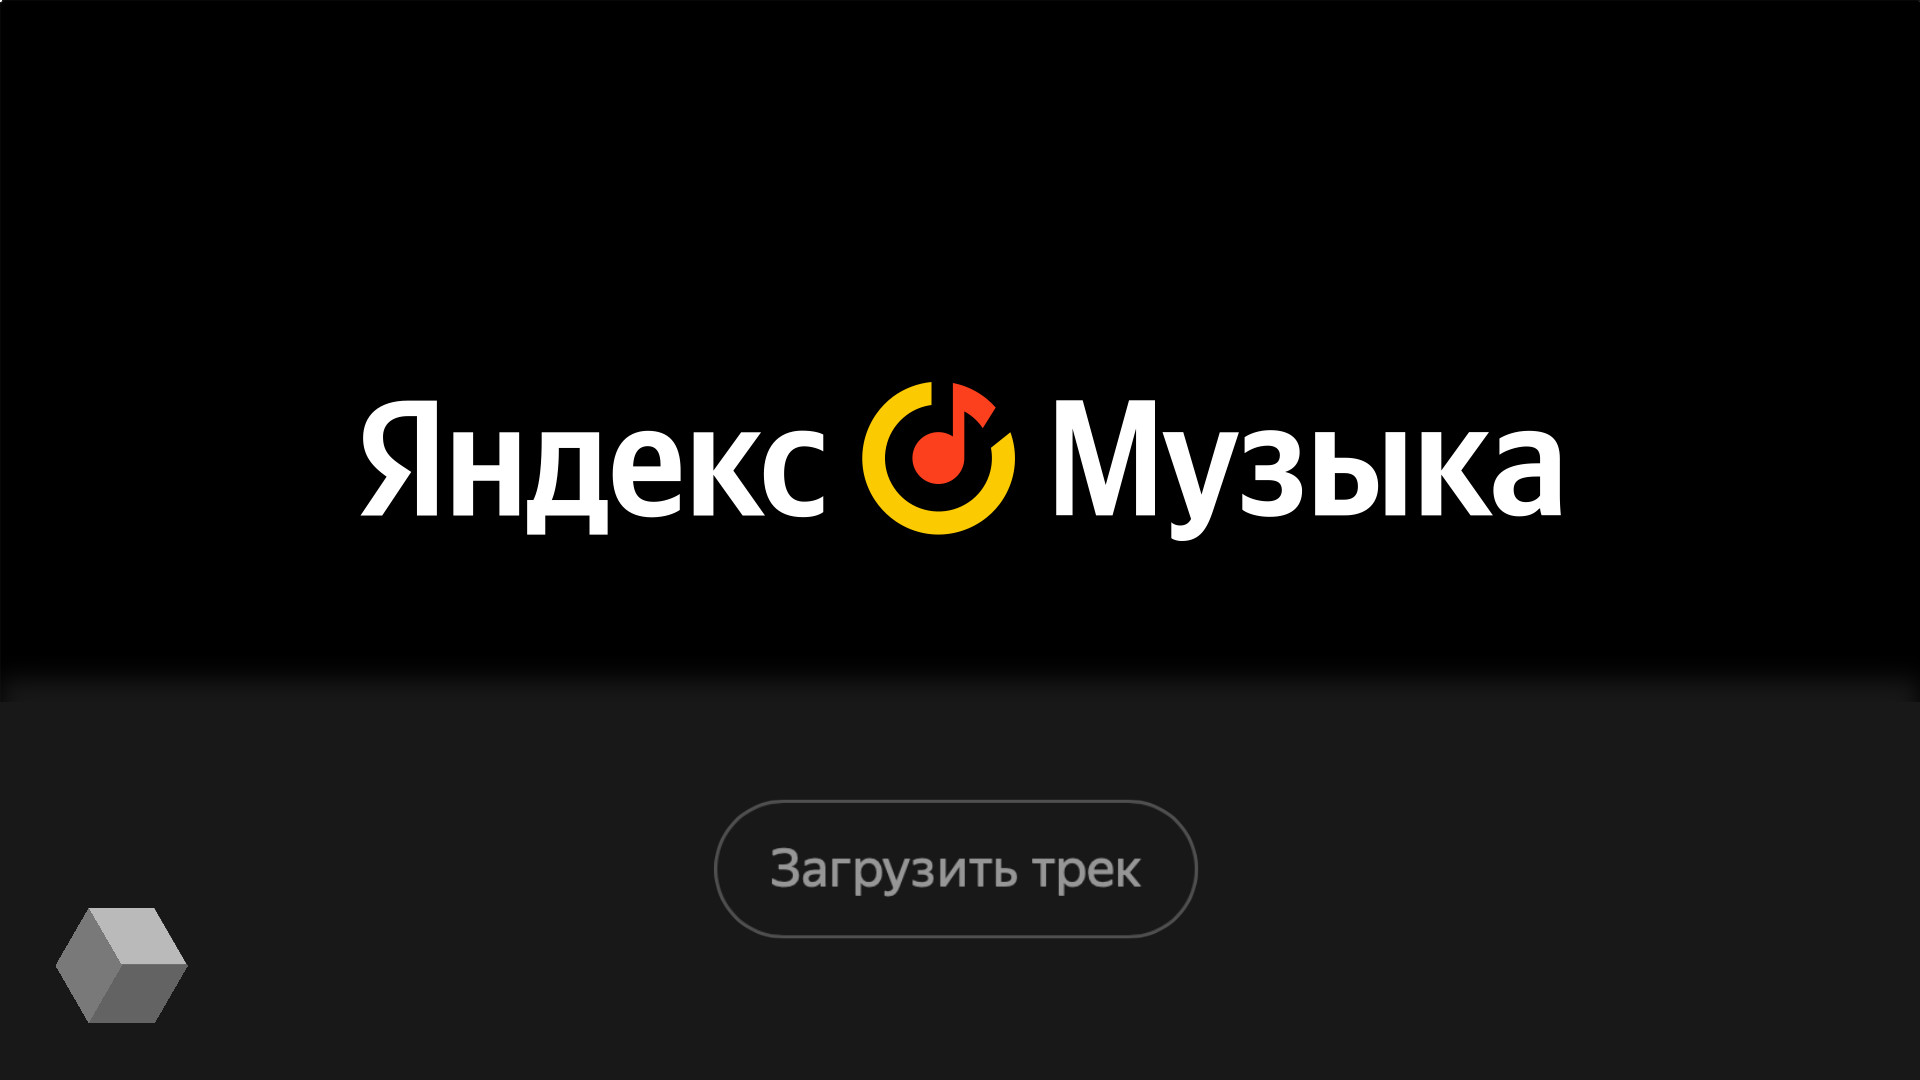 Яндекс музыка с бесконечной подпиской телеграмм фото 10